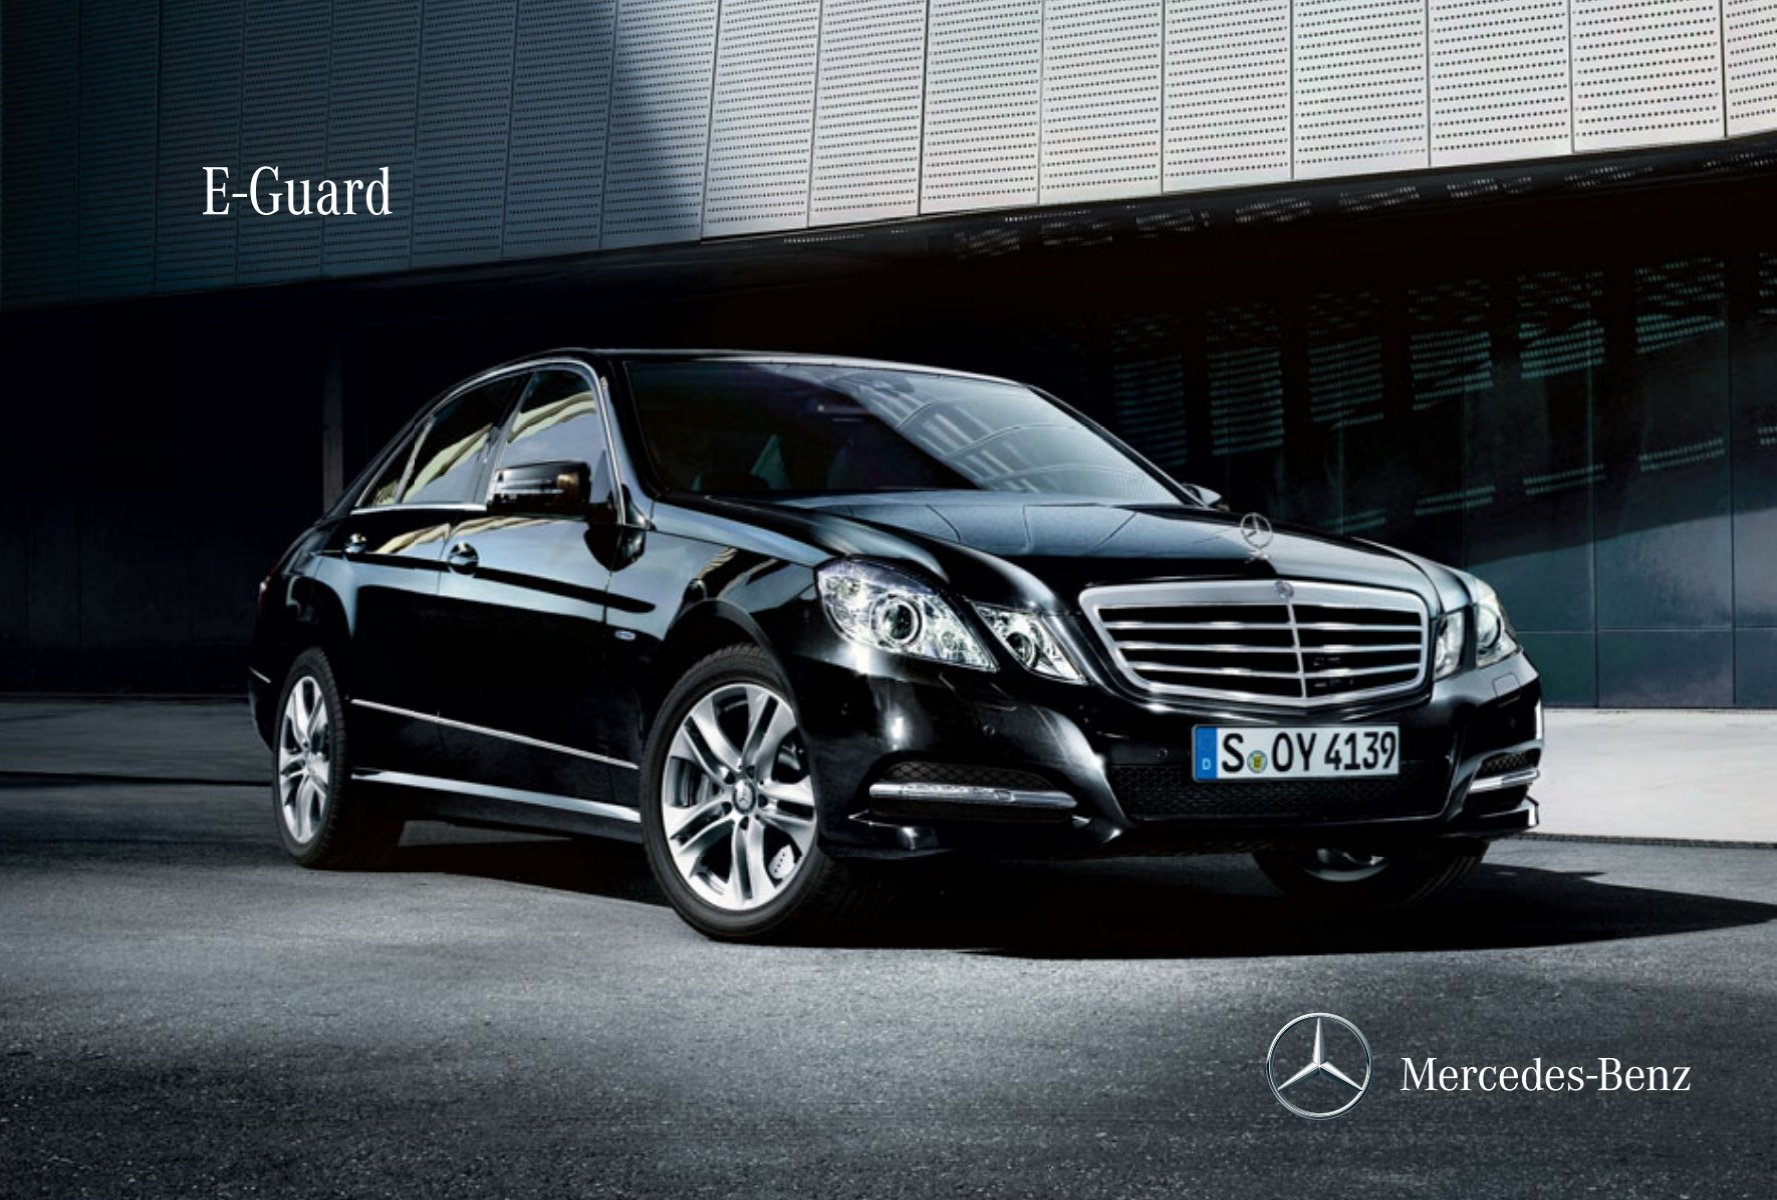 E-Guard - Mercedes Benz